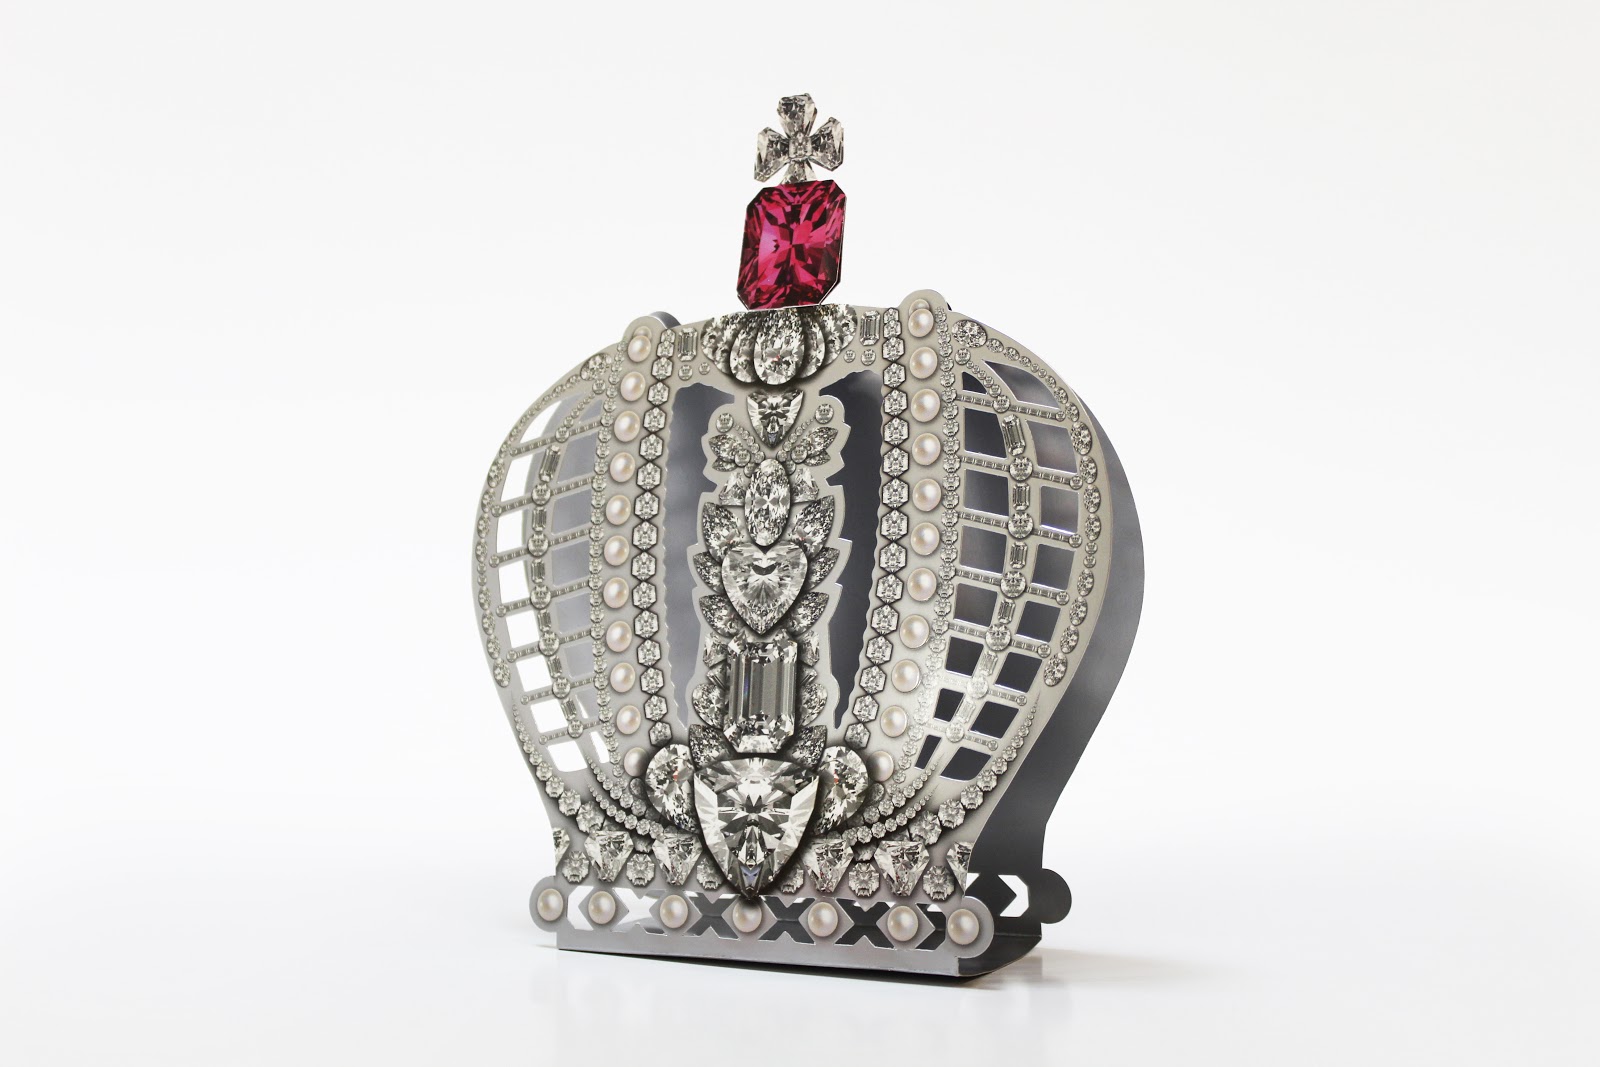 Оригинальная обечайка на коробку конфет в форме короны Российской империи